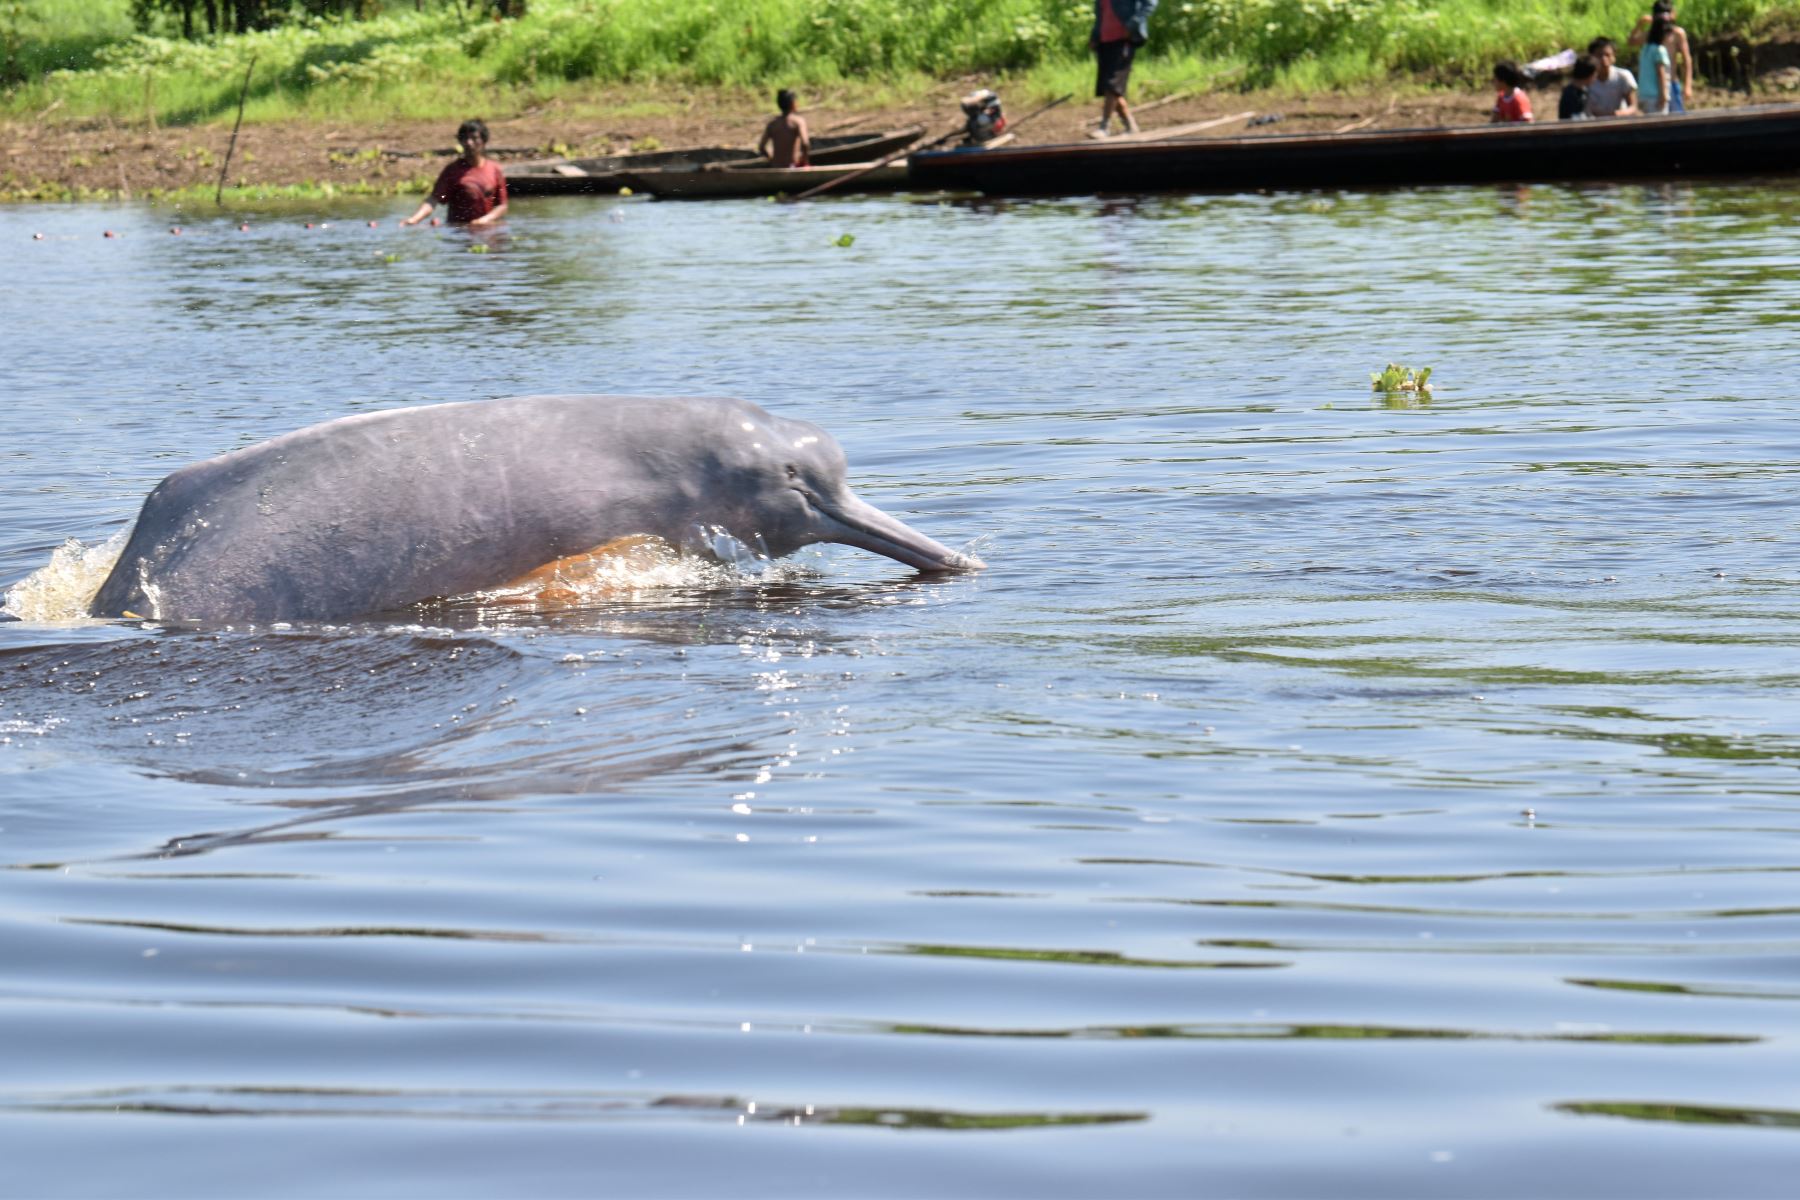 Investigadores peruanos participaron de una expedición científica en el río Ucayali para estudiar a los delfines de río. ANDINA/Difusión